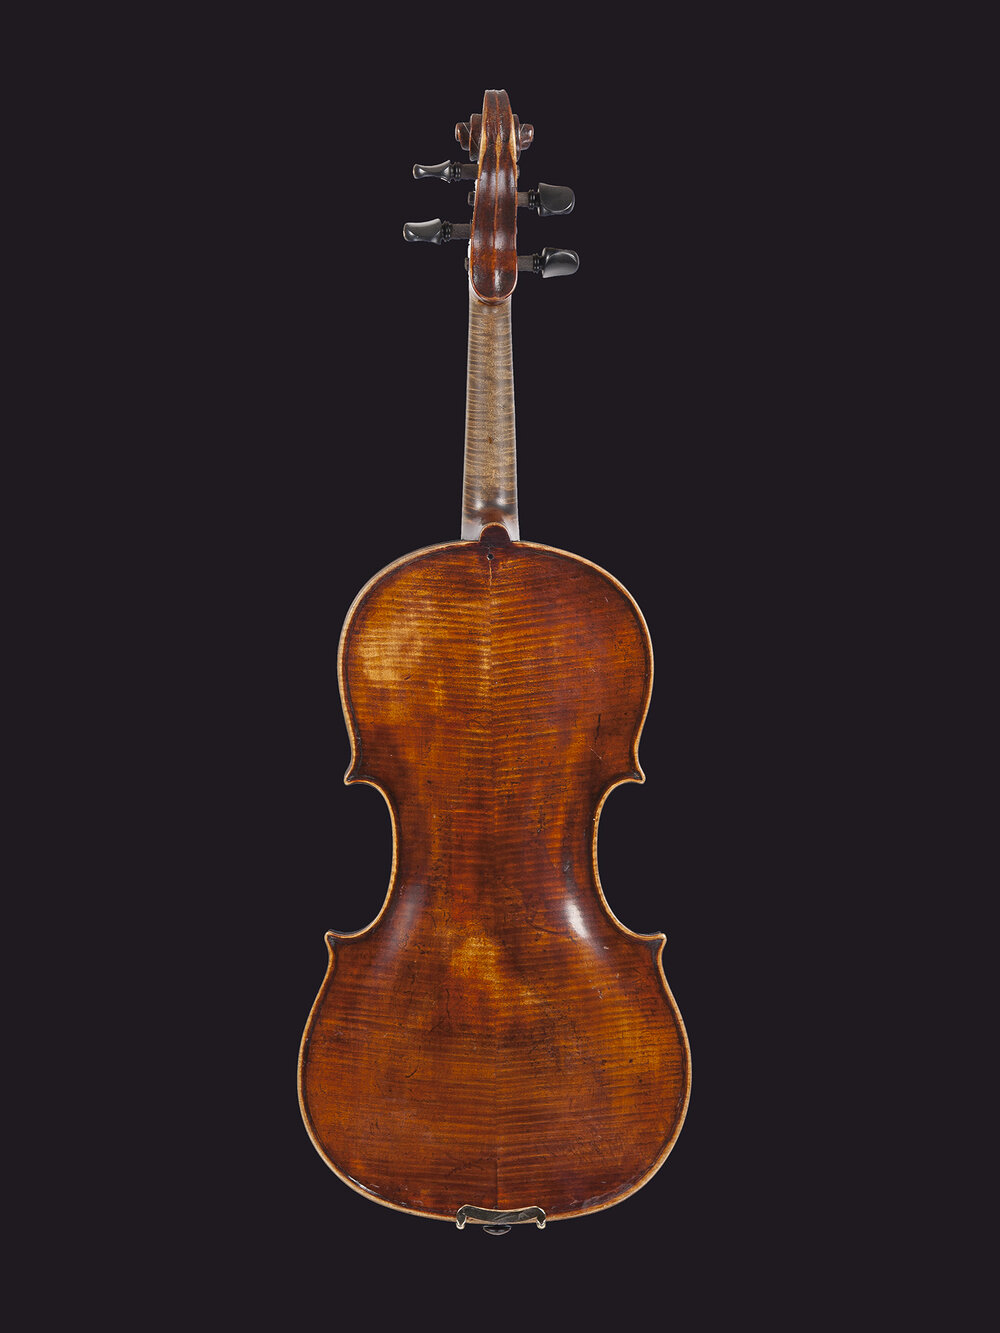 Vintage Violin - 18th Century Amati Baroque Violin